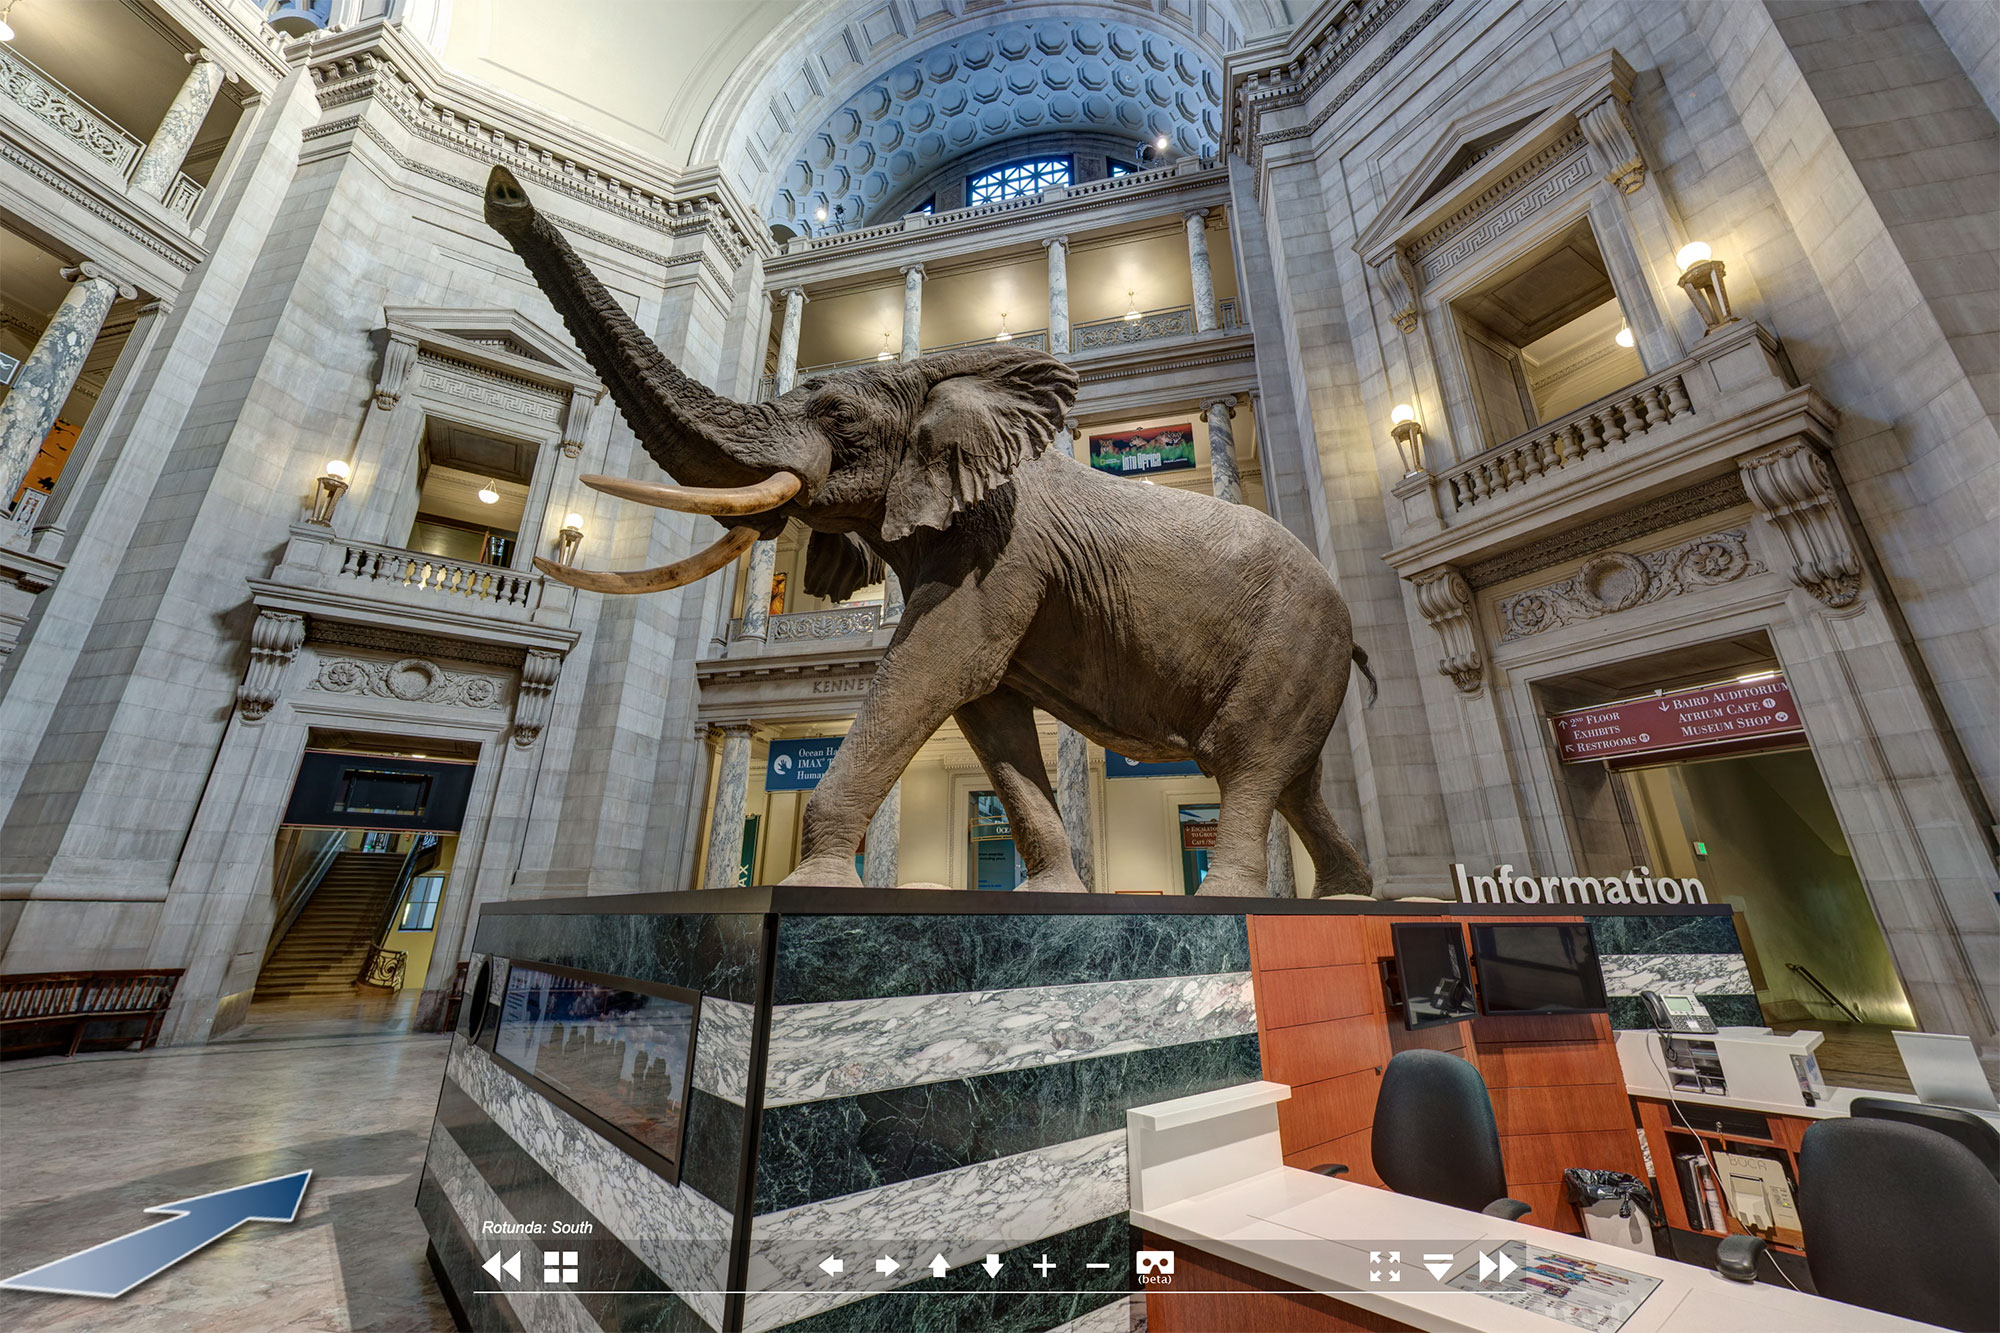 У входа в музей посетителей встречает огромное чучело слона